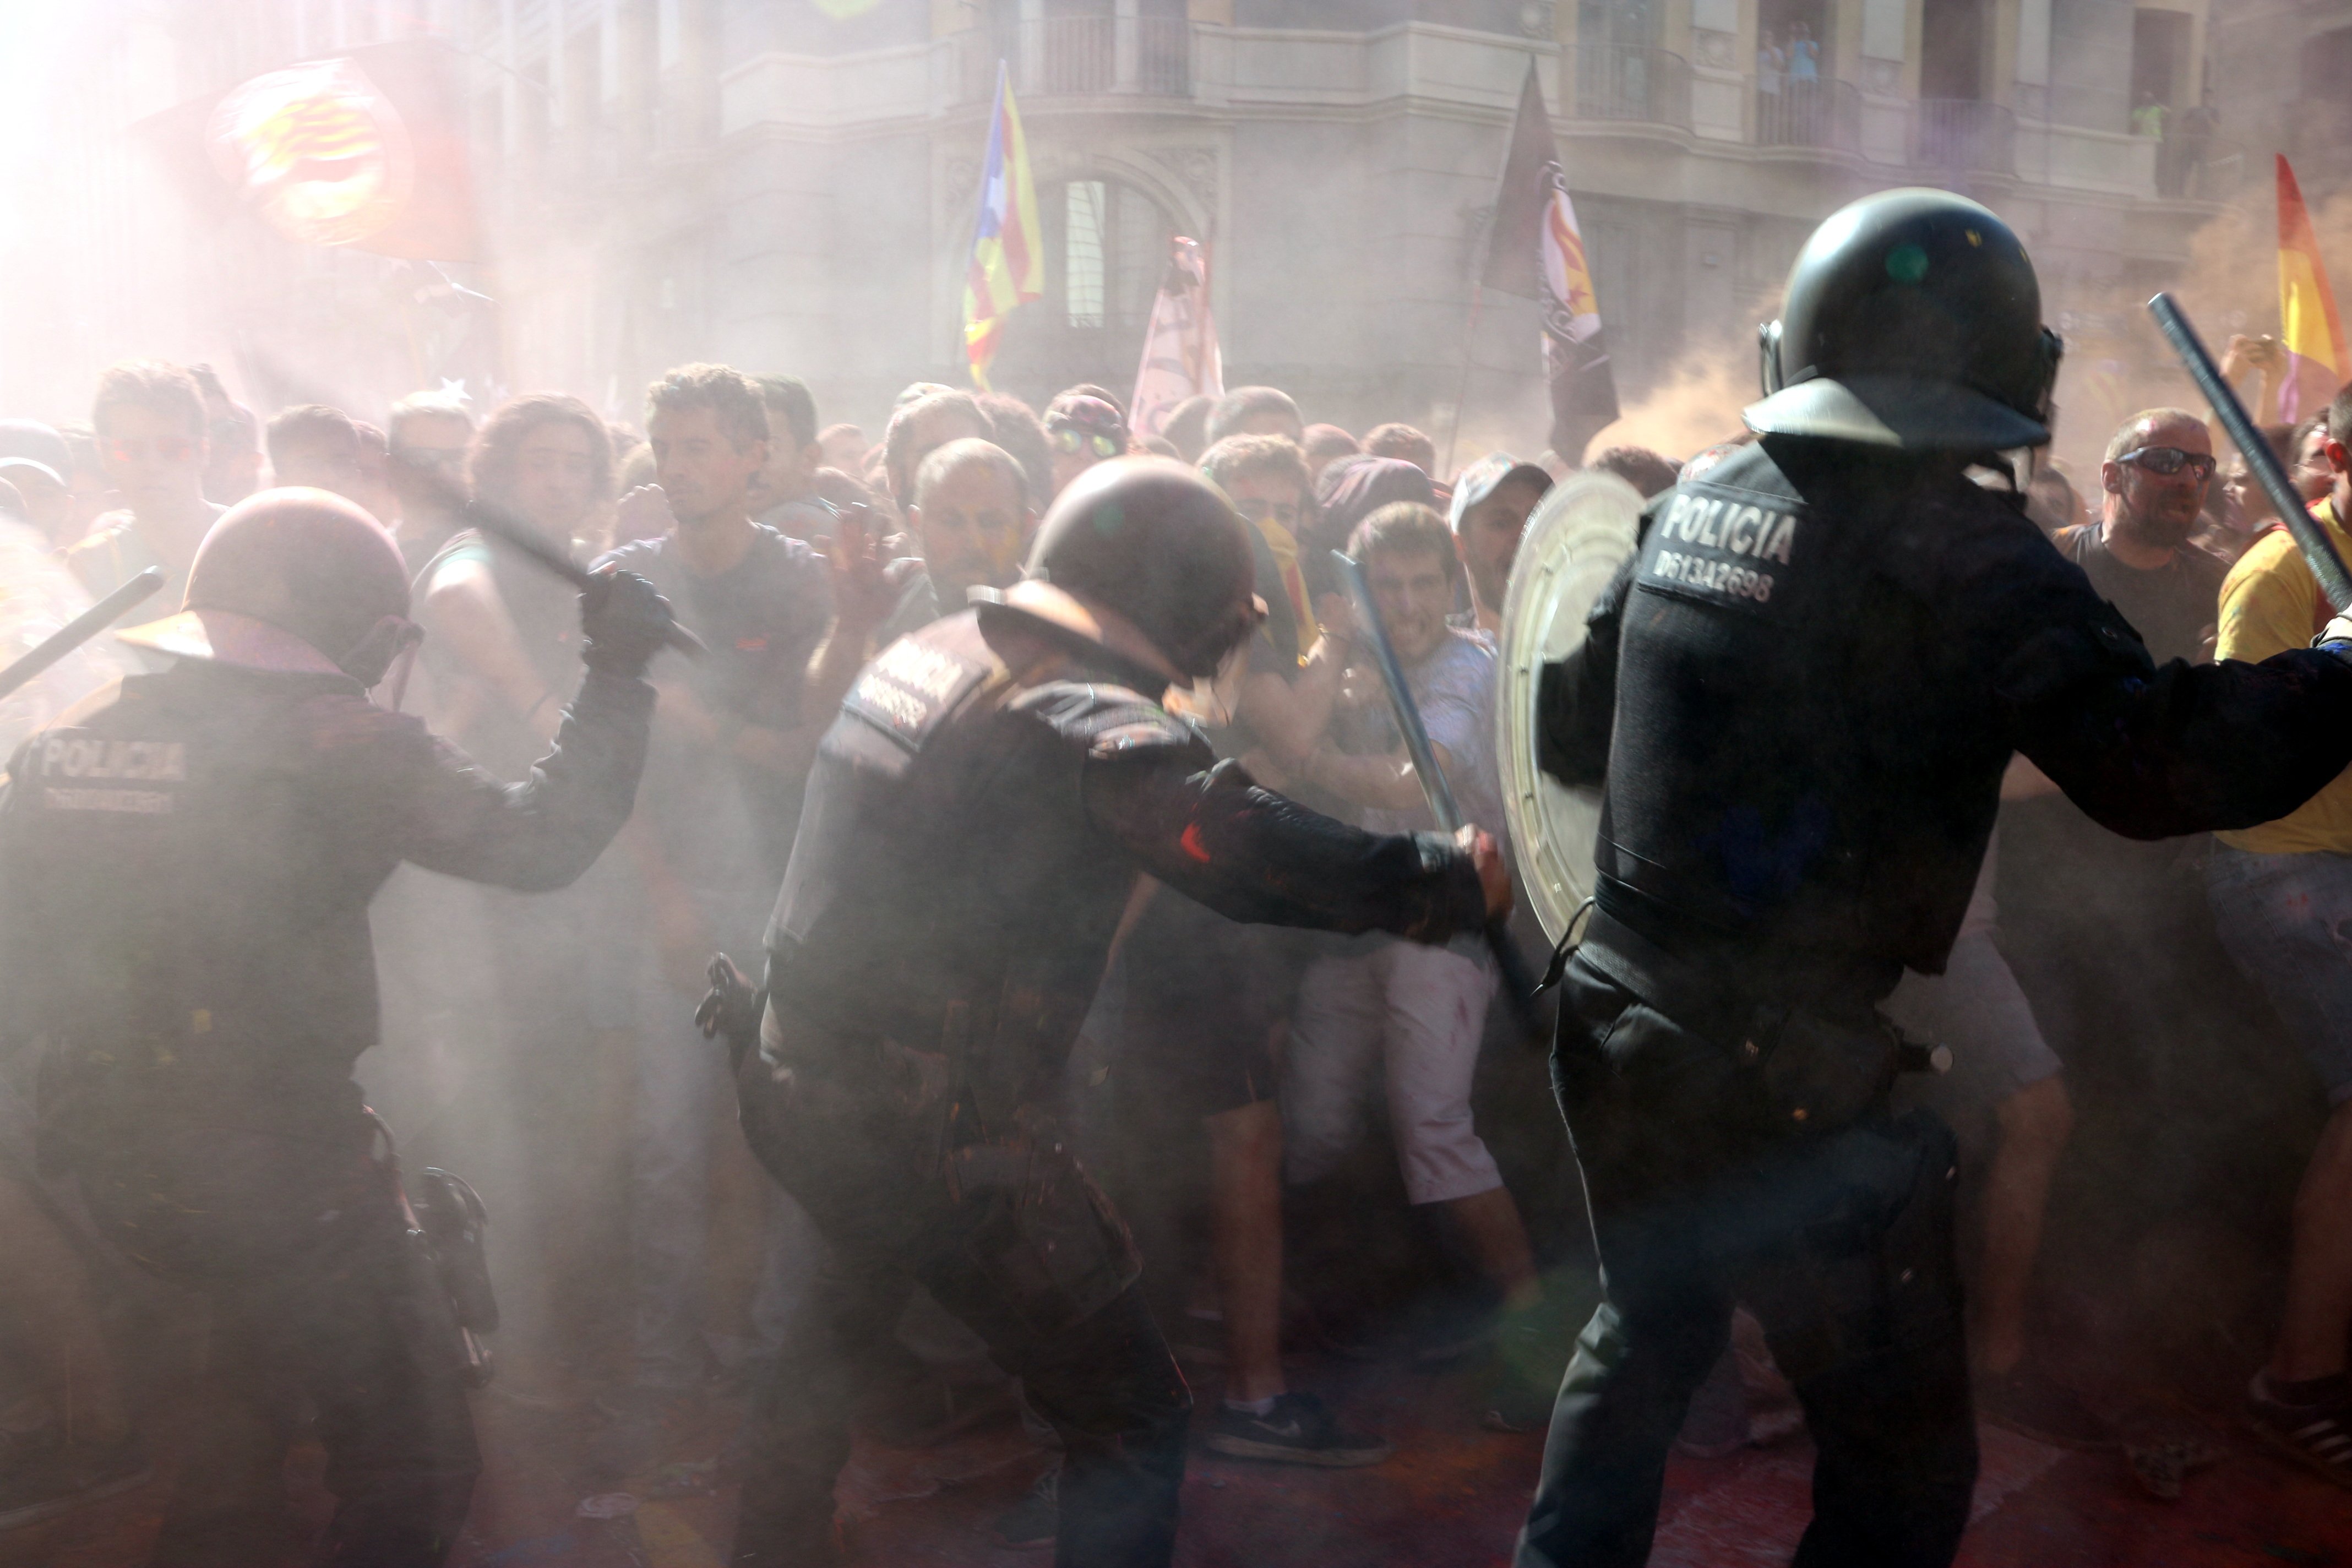 Mossos per la República cree que la acción policial fue "del todo proporcional"